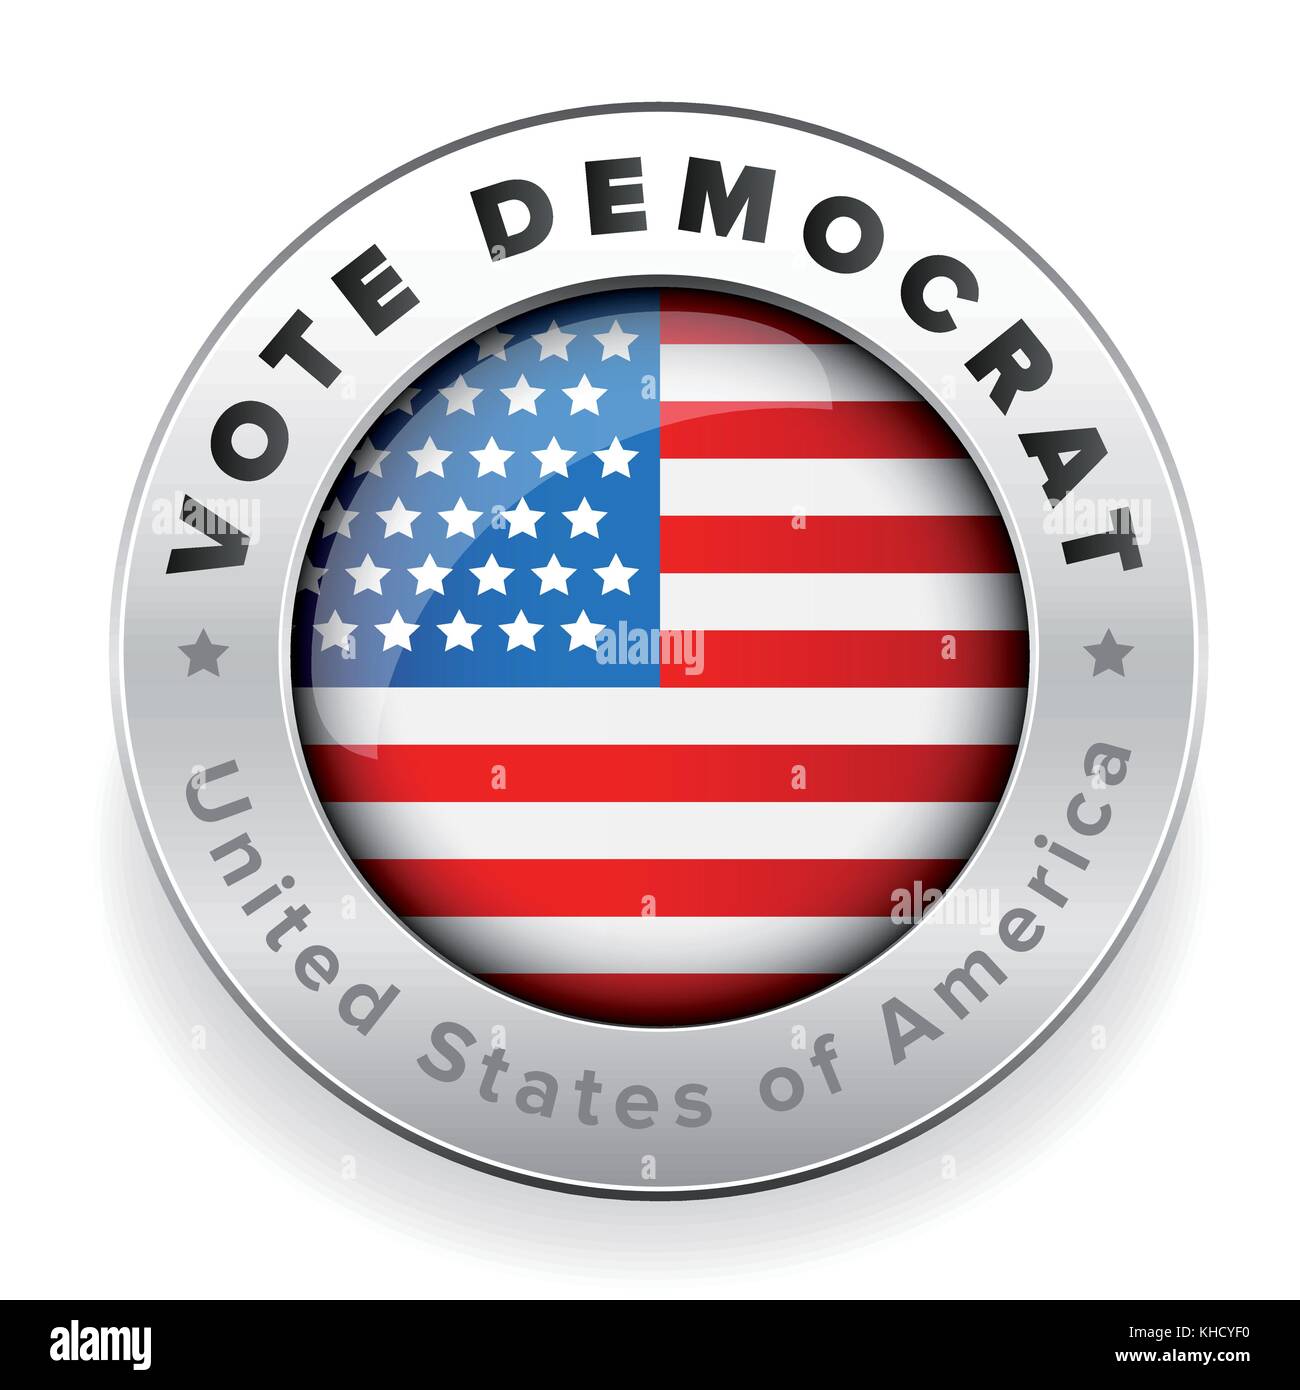 Voter républicain de badge drapeau usa Illustration de Vecteur